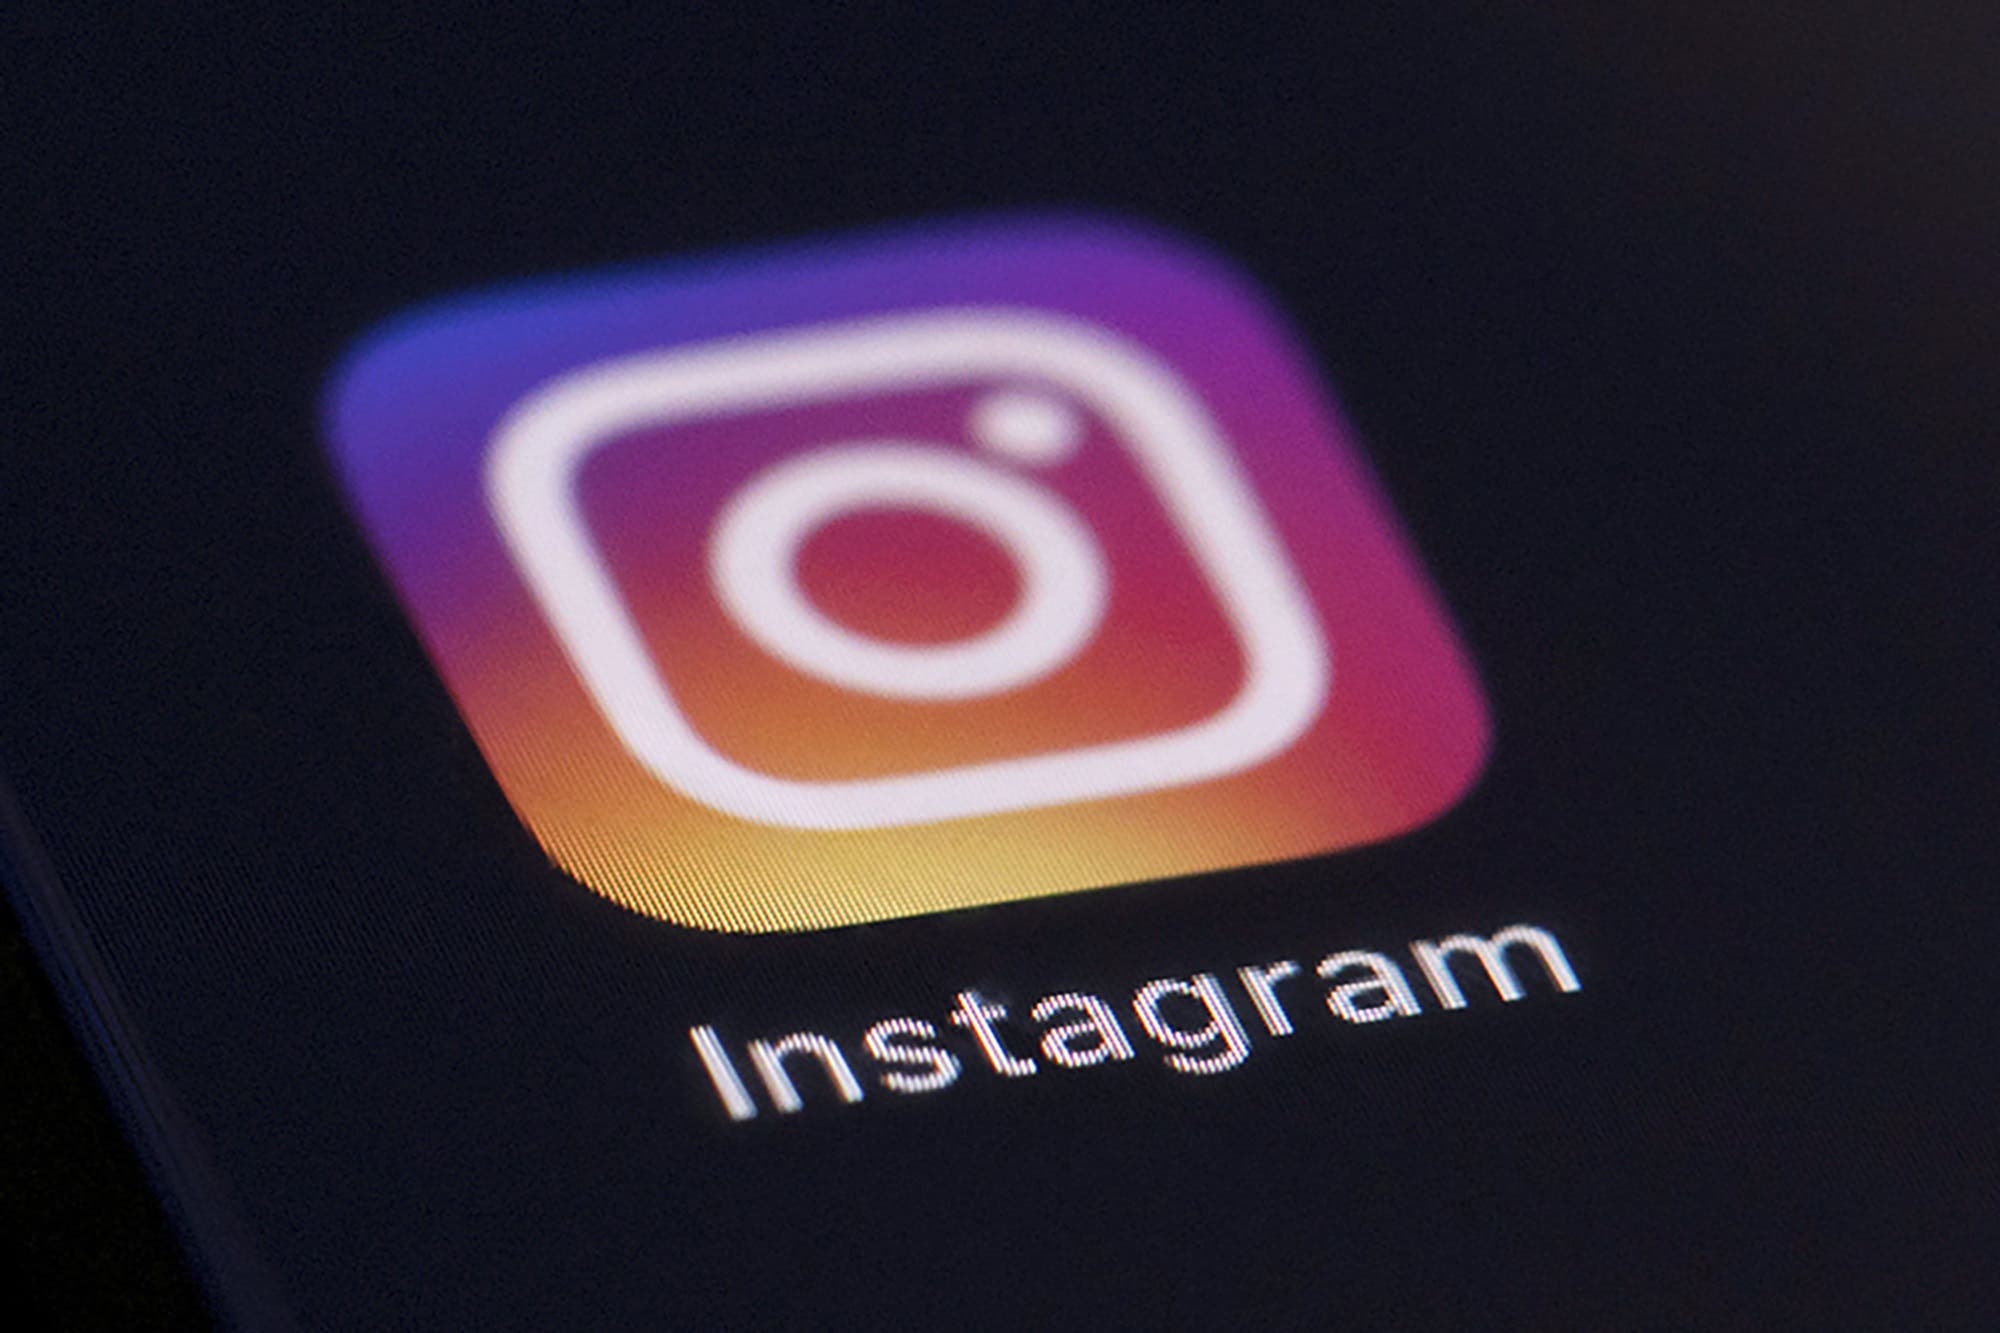 La nieta de Mussolini acusa a Instagram de censurar su apellido, aunque ya tiene un perfil